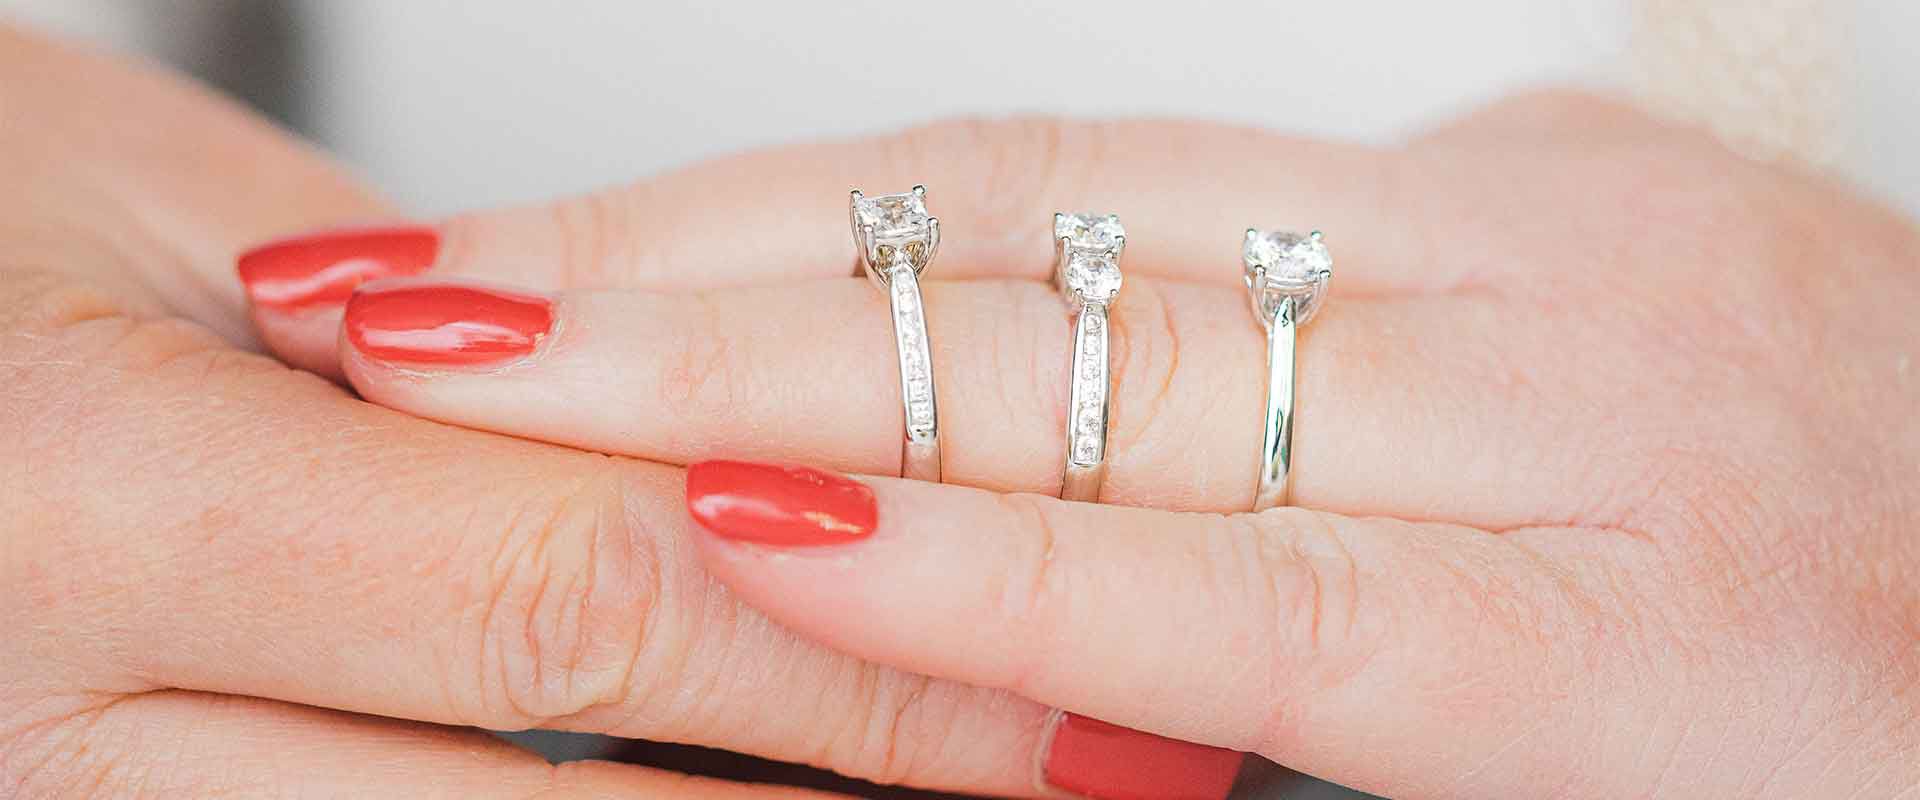 Women's Stylish Wedding Rings Promise Ring Anniversary - Temu